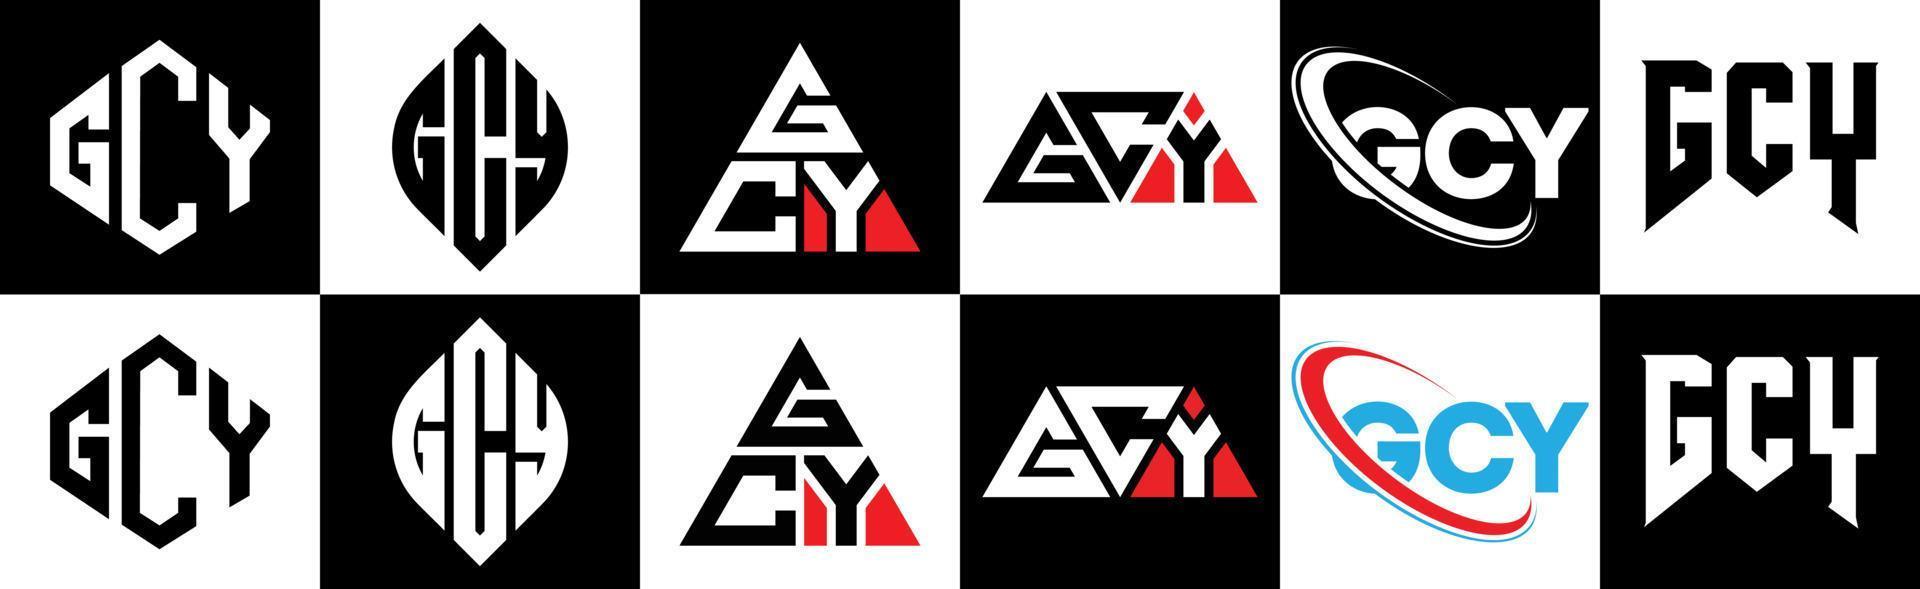 gcy brief logo ontwerp in zes stijl. gcy veelhoek, cirkel, driehoek, zeshoek, vlak en gemakkelijk stijl met zwart en wit kleur variatie brief logo reeks in een tekengebied. gcy minimalistische en klassiek logo vector